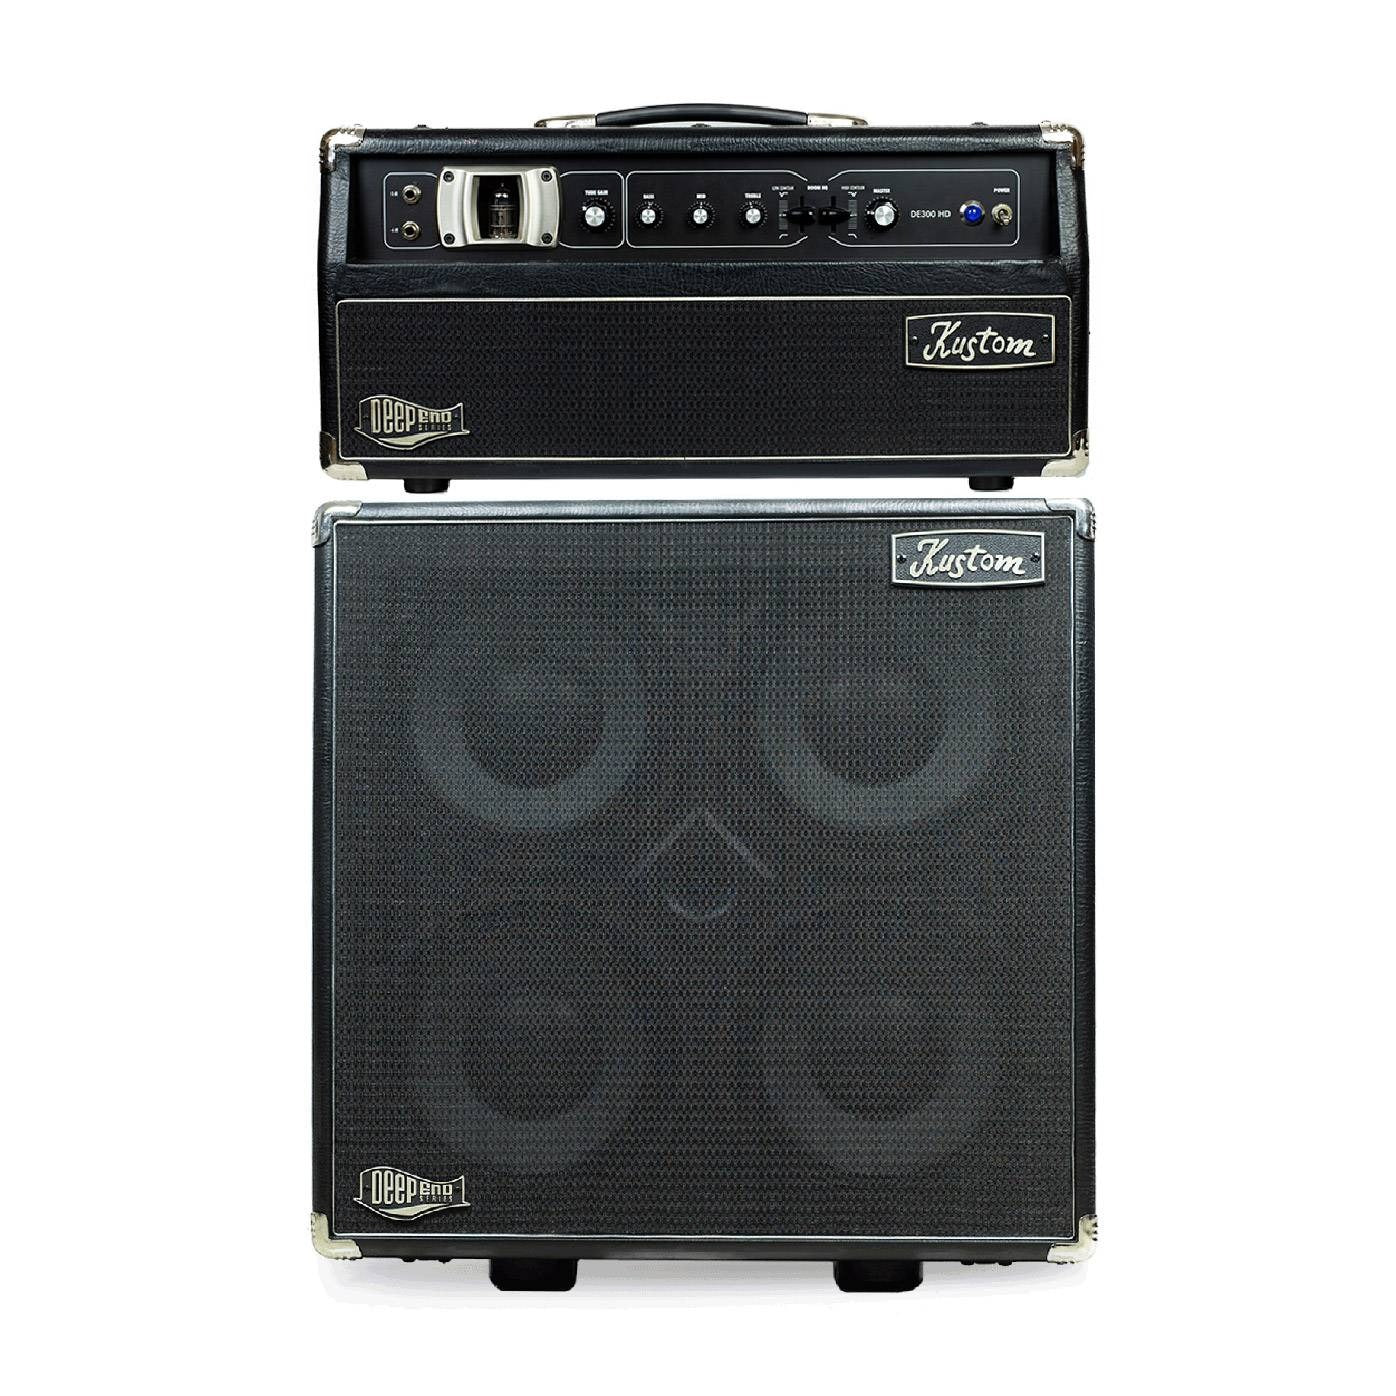 Kustom DE300HD + DE410H Deep End 300W Hybrid Tube Bass Amplifier Head with 400W Speaker Cabinet (4 x 10Inch Speakers)